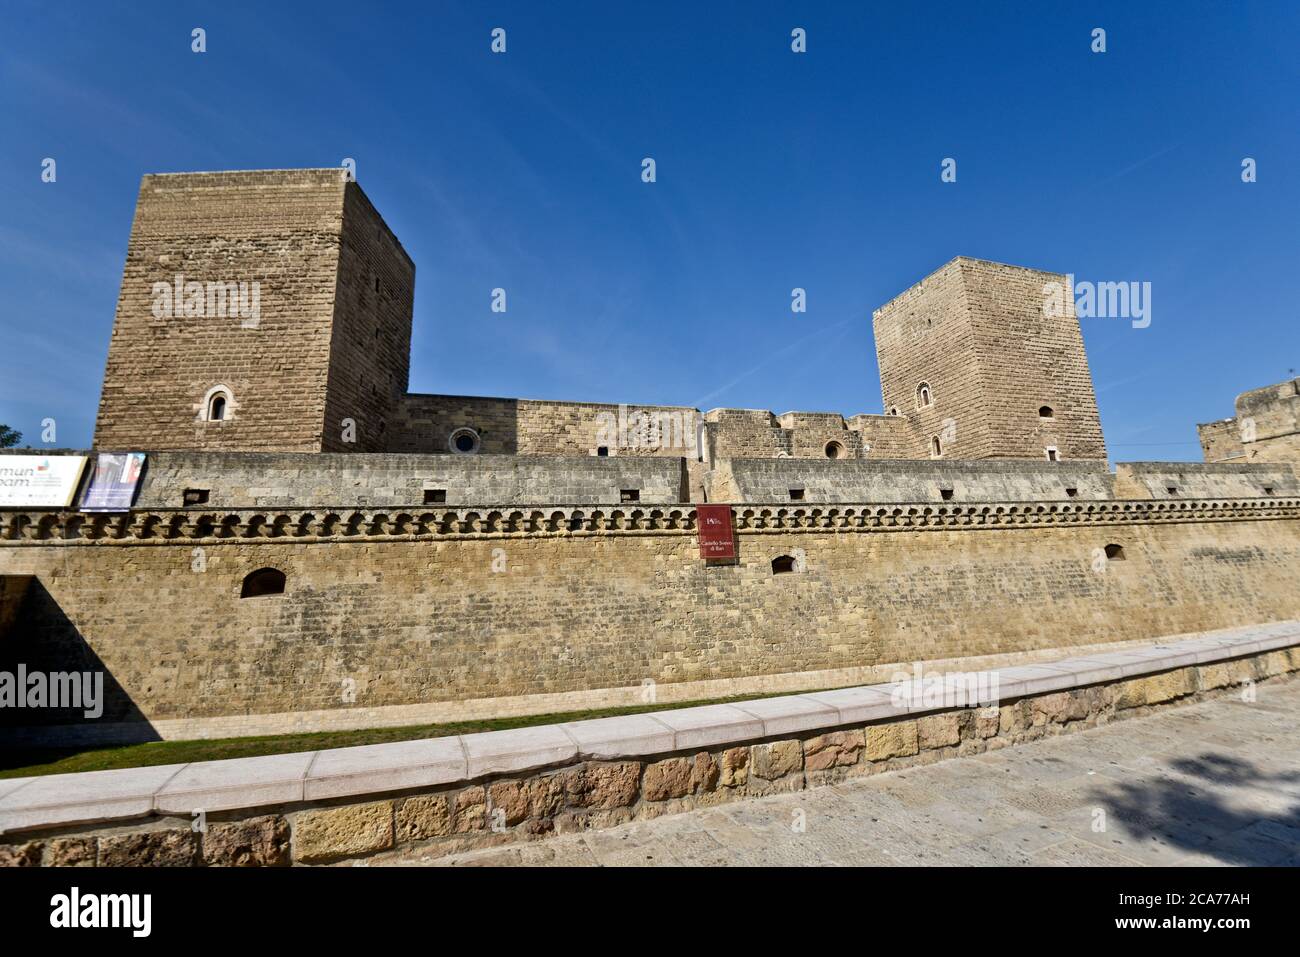 Castello Svevo di Bari (Bari Castle), Italy Stock Photo